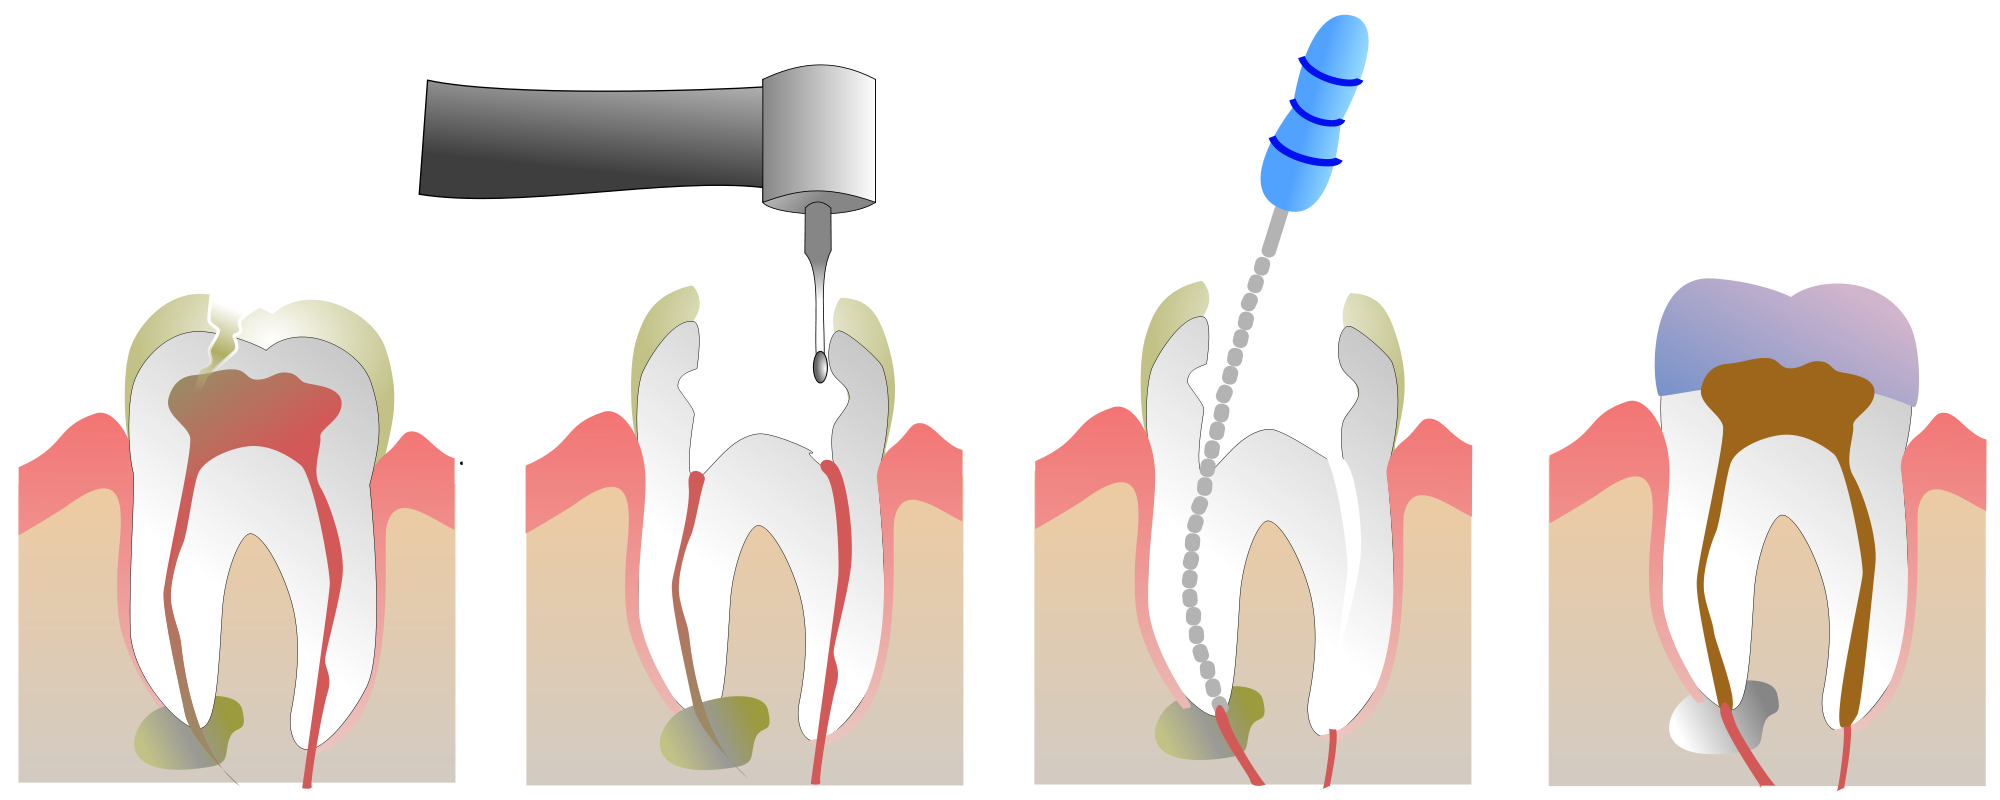 4 Канальный пульпит зуба. Пульпит 2 канального зуба. Периодонтит 1 канальный. Пломбировка корневых каналов